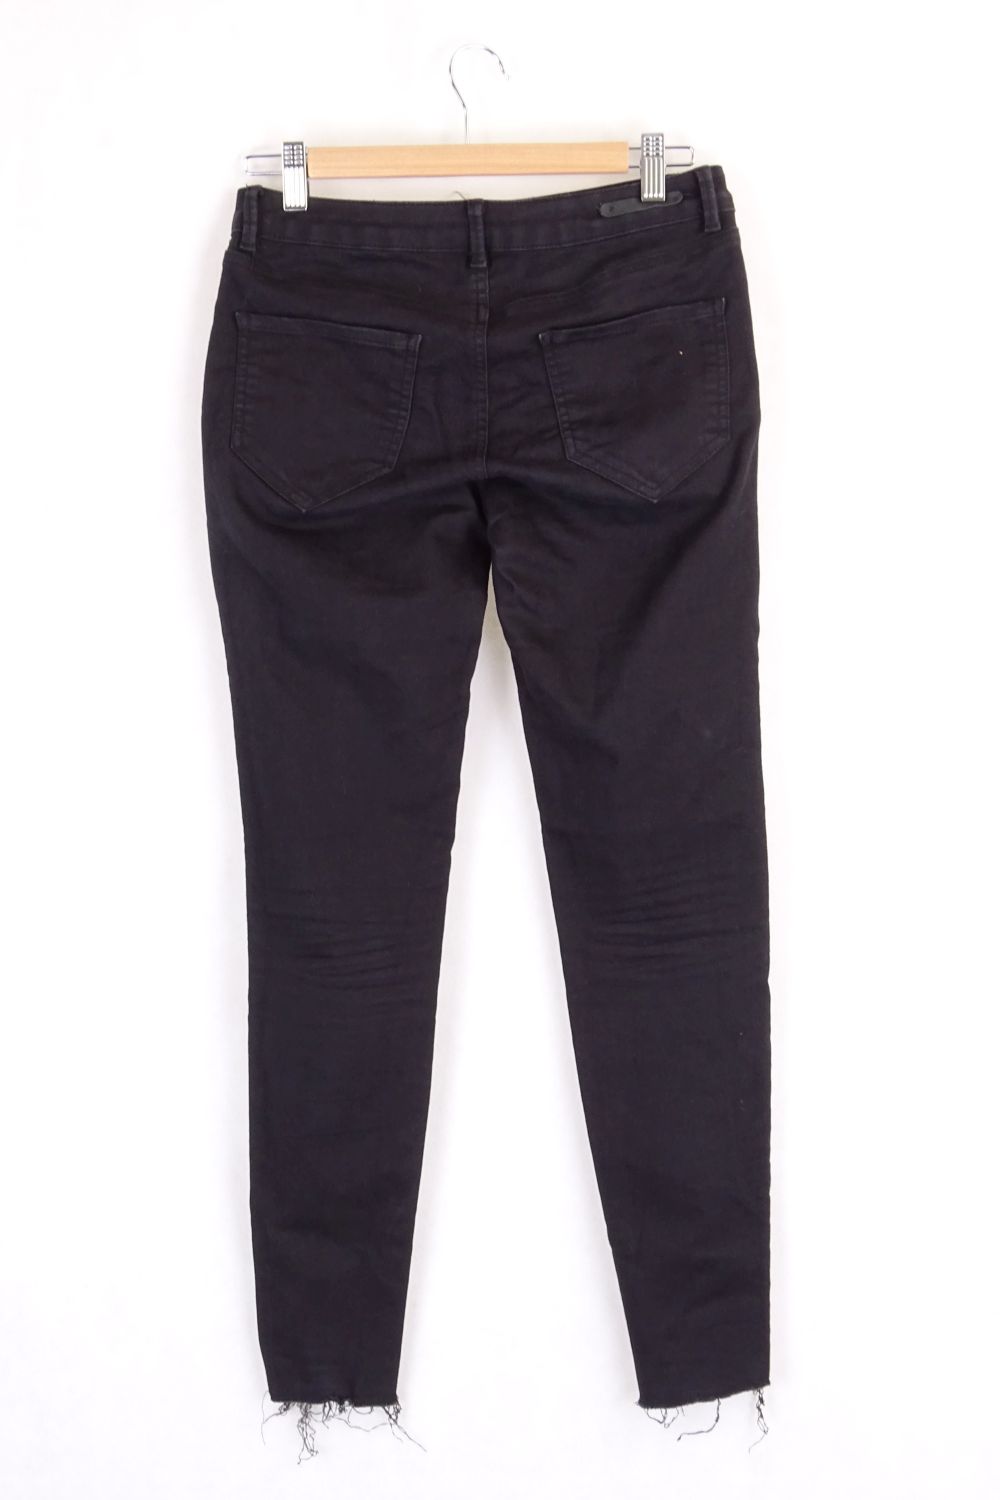 Black Zara Skinny Jeans 8